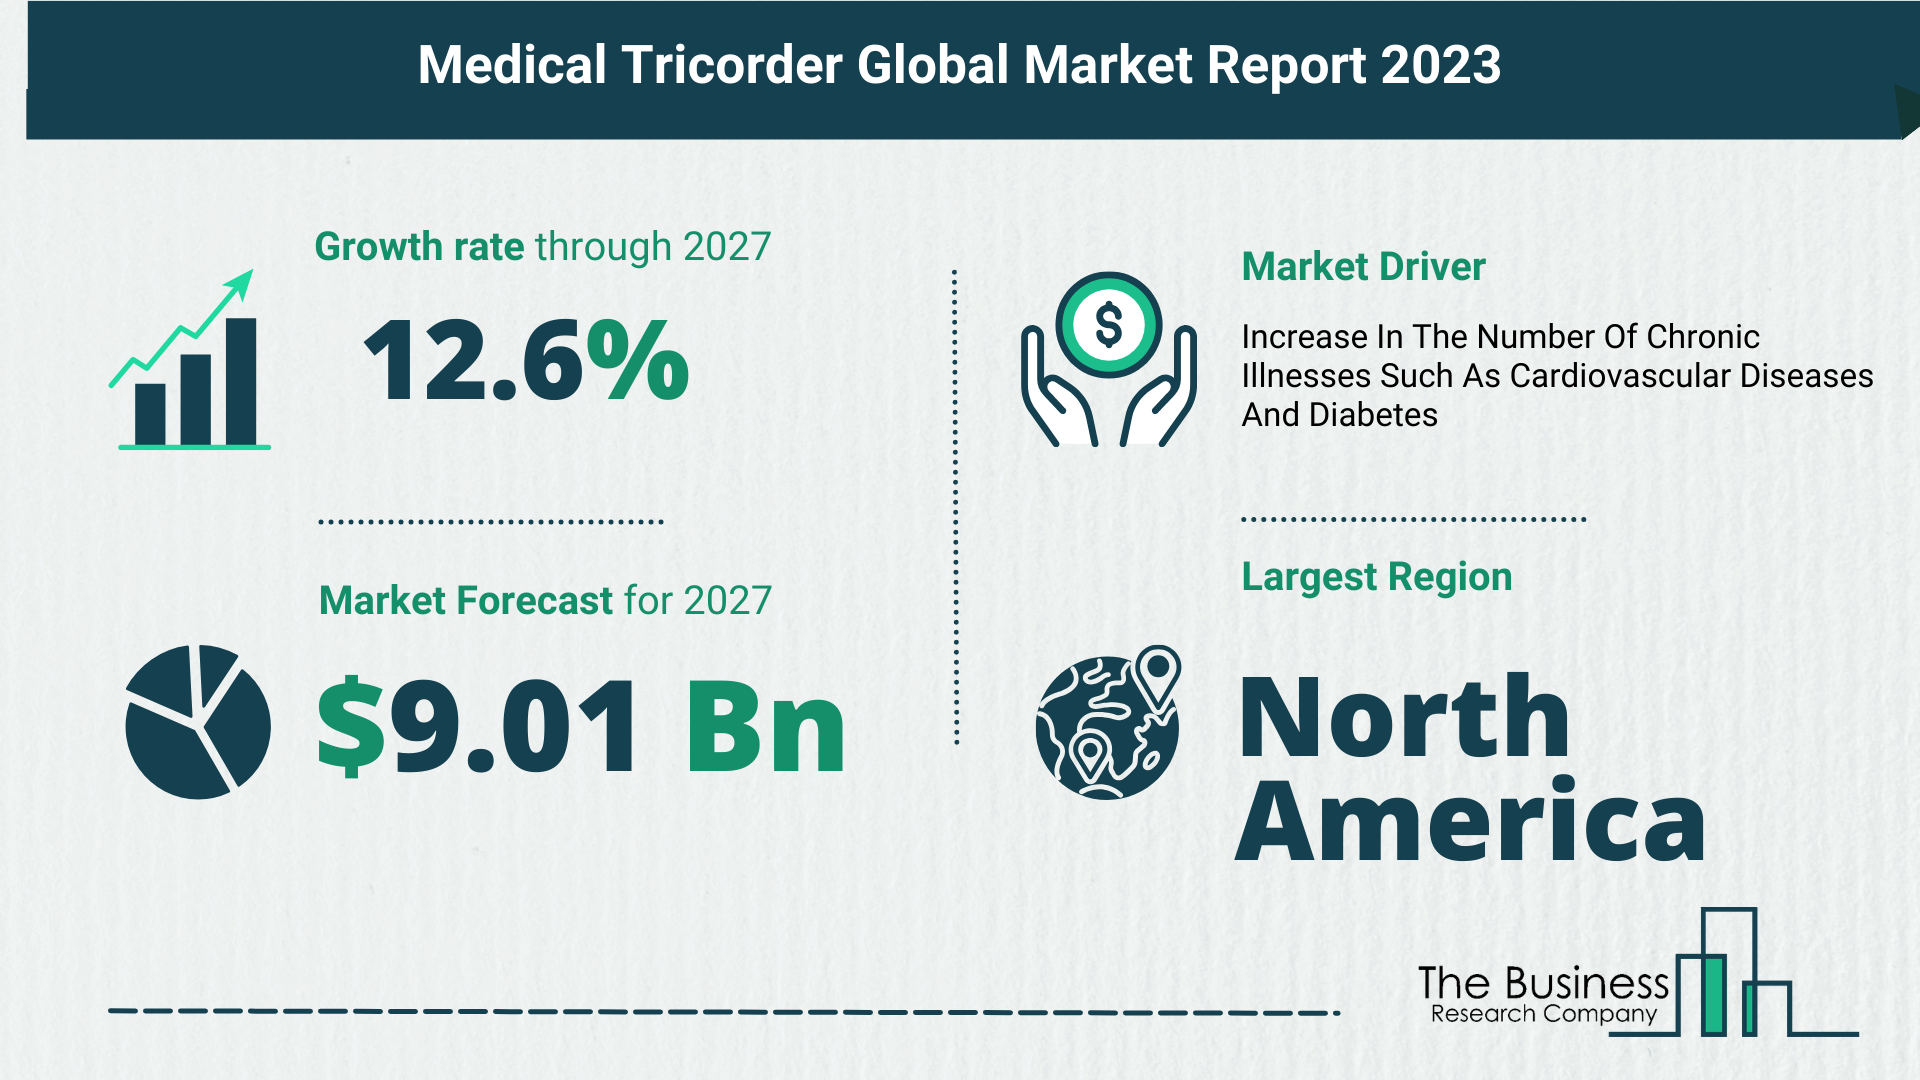 Global Medical Tricorder Market Size